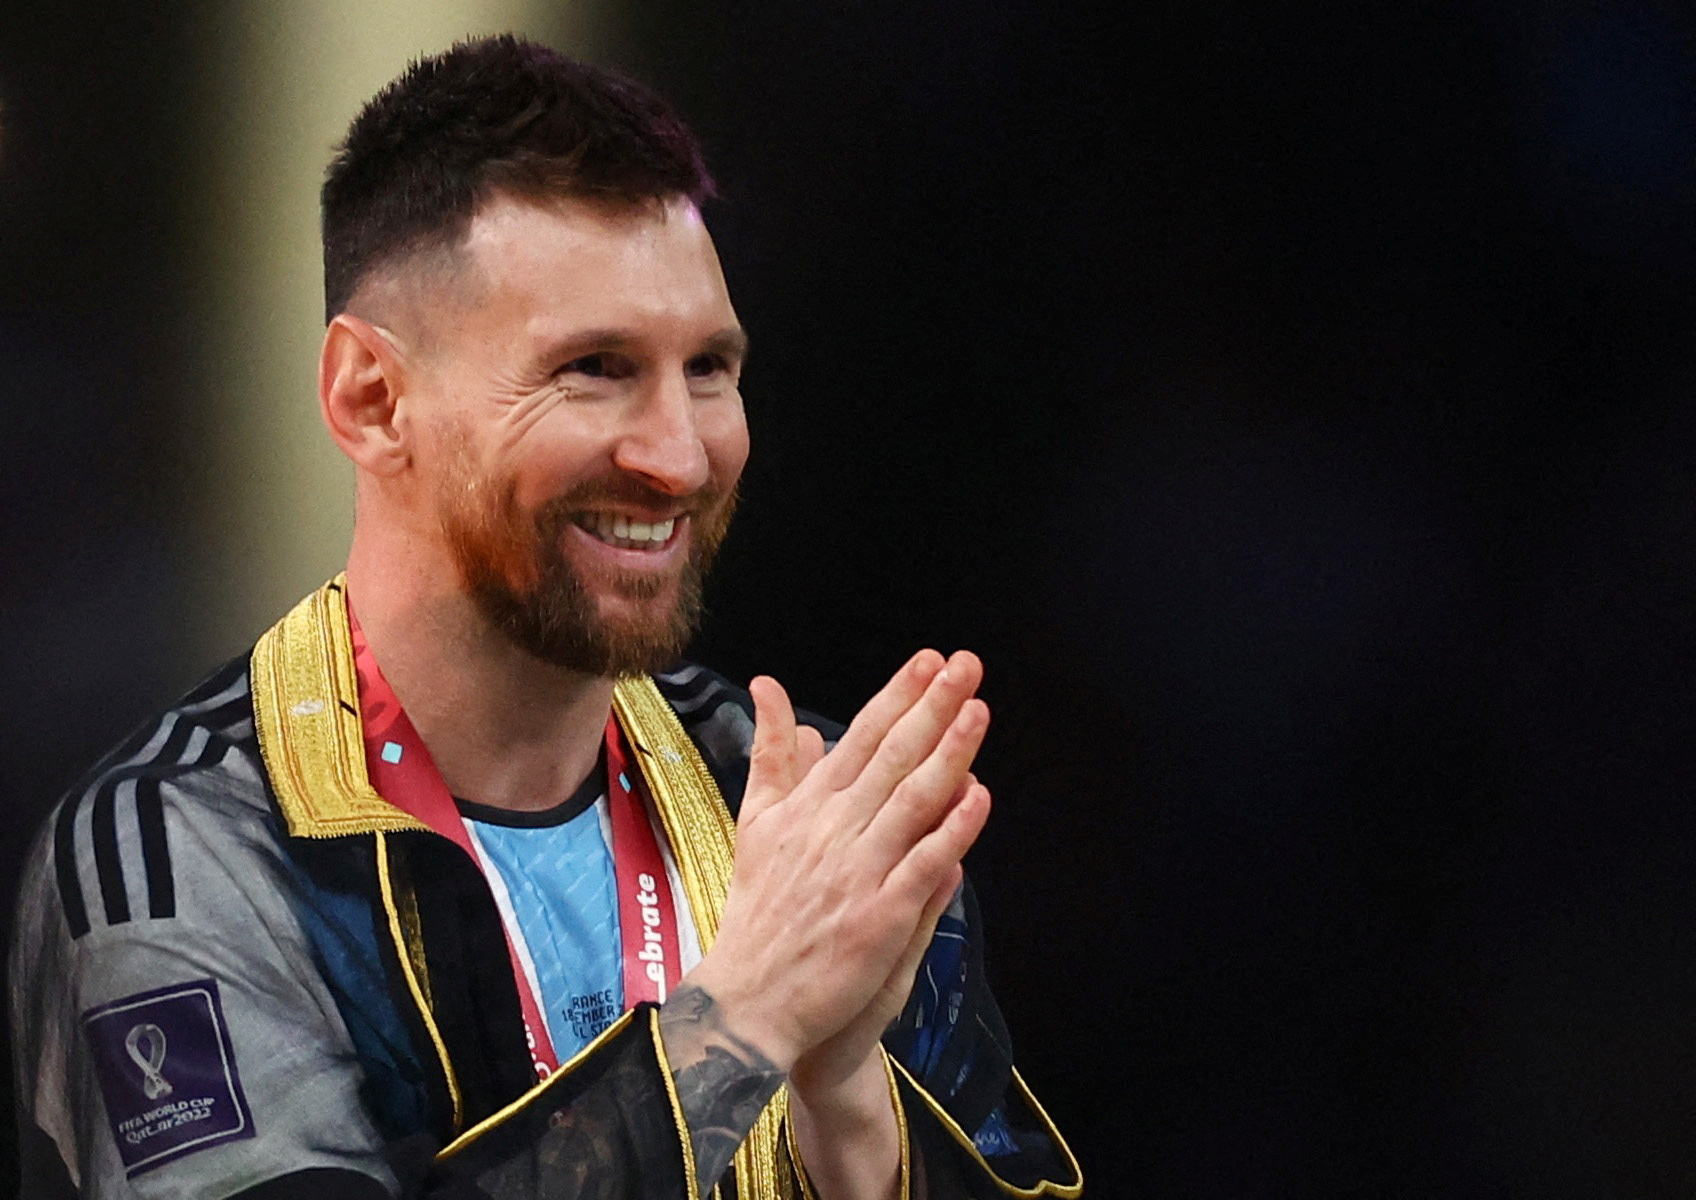 Con la túnica puesta y restregándose las manos, así esperó Messi poder levantar la copa del mundo / REUTERS/Kai Pfaffenbach     TPX IMAGES OF THE DAY